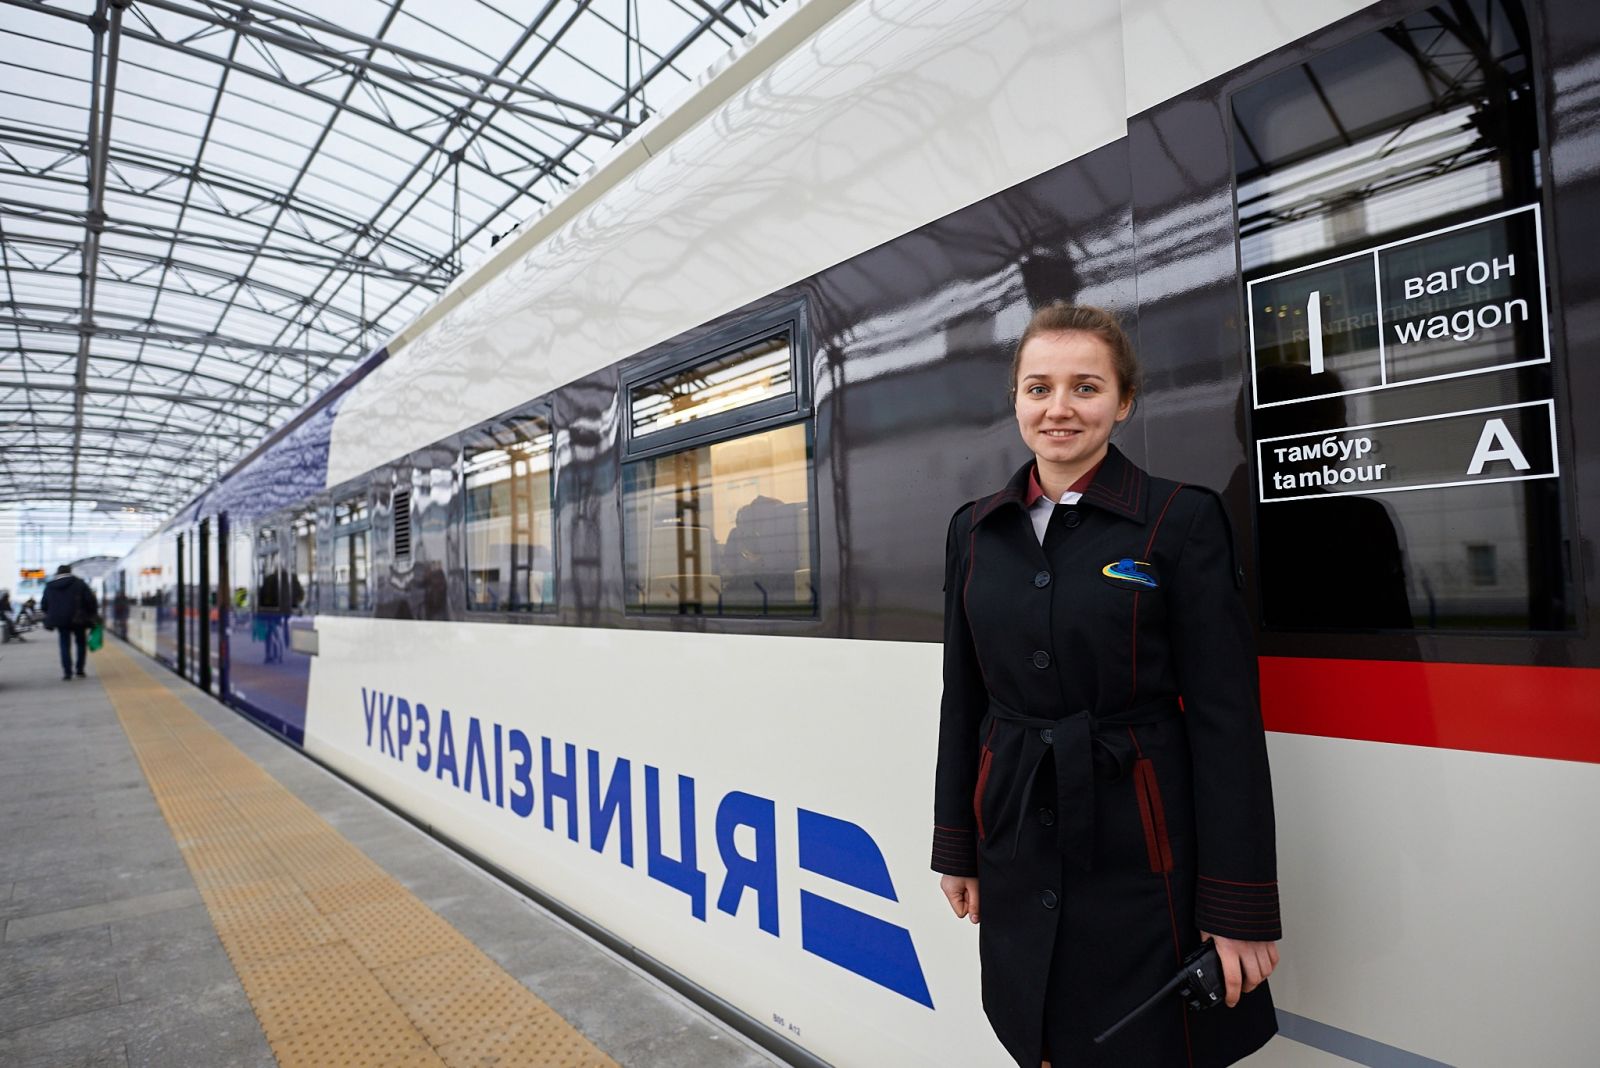 Авиаэкспресс "Киев — Борисполь" будет обслуживать новый украинский поезд, фото — "Укрзализныця"